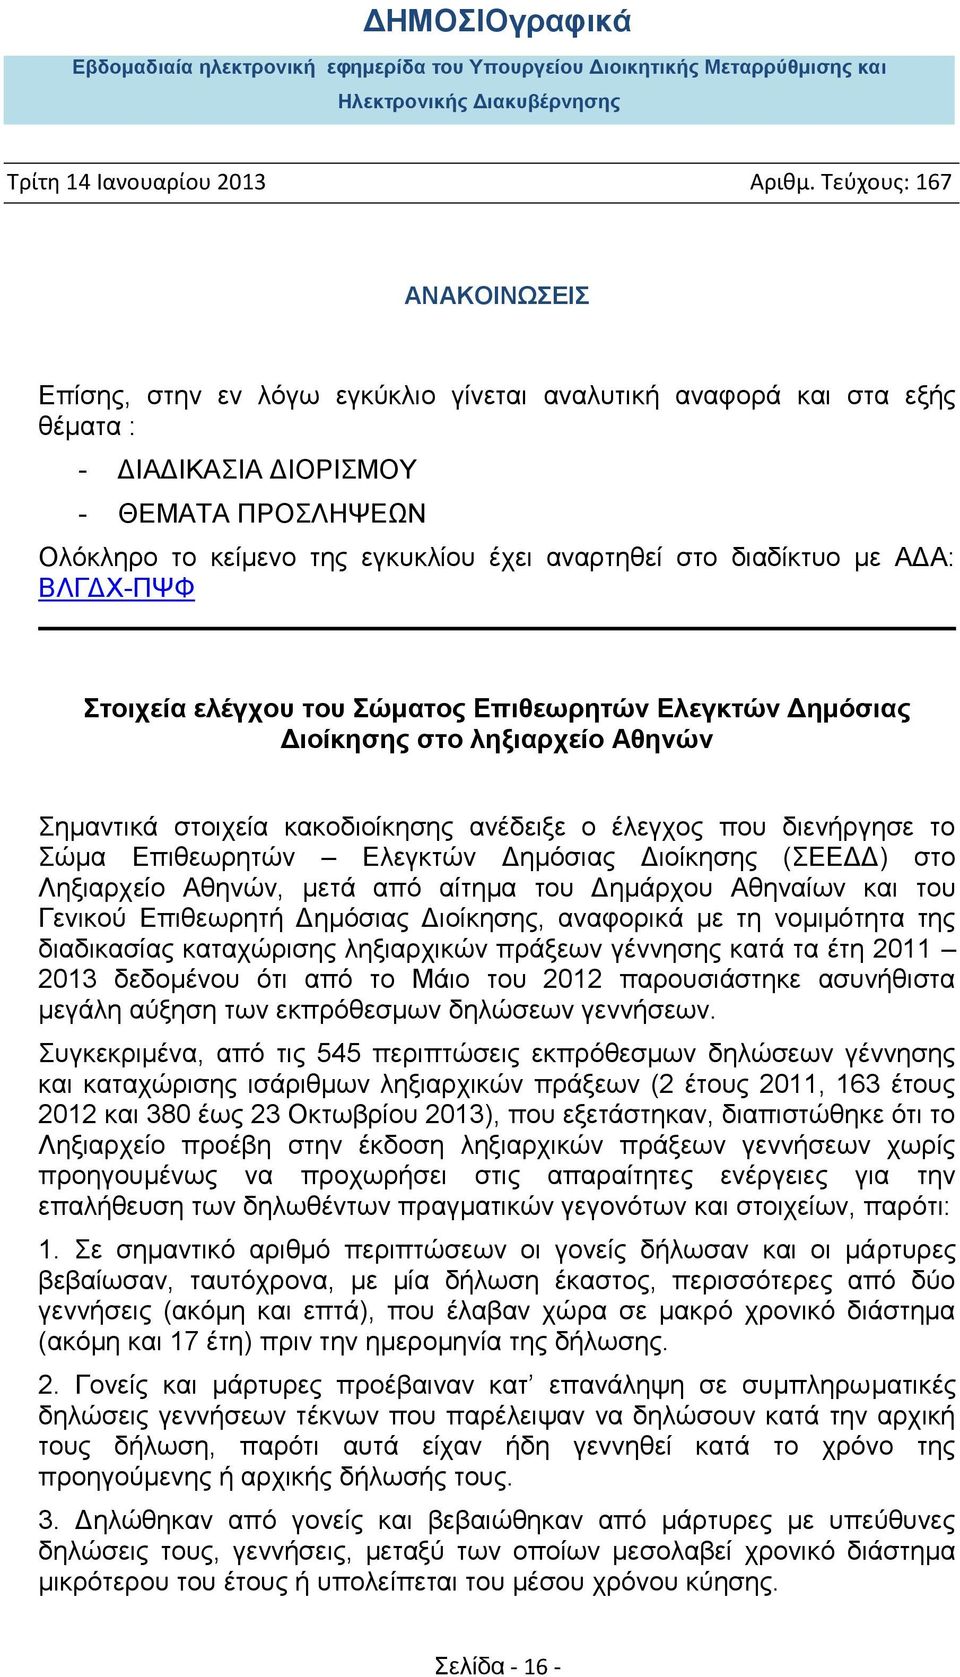 Δημόσιας Διοίκησης (ΣΕΕΔΔ) στο Ληξιαρχείο Αθηνών, μετά από αίτημα του Δημάρχου Αθηναίων και του Γενικού Επιθεωρητή Δημόσιας Διοίκησης, αναφορικά με τη νομιμότητα της διαδικασίας καταχώρισης